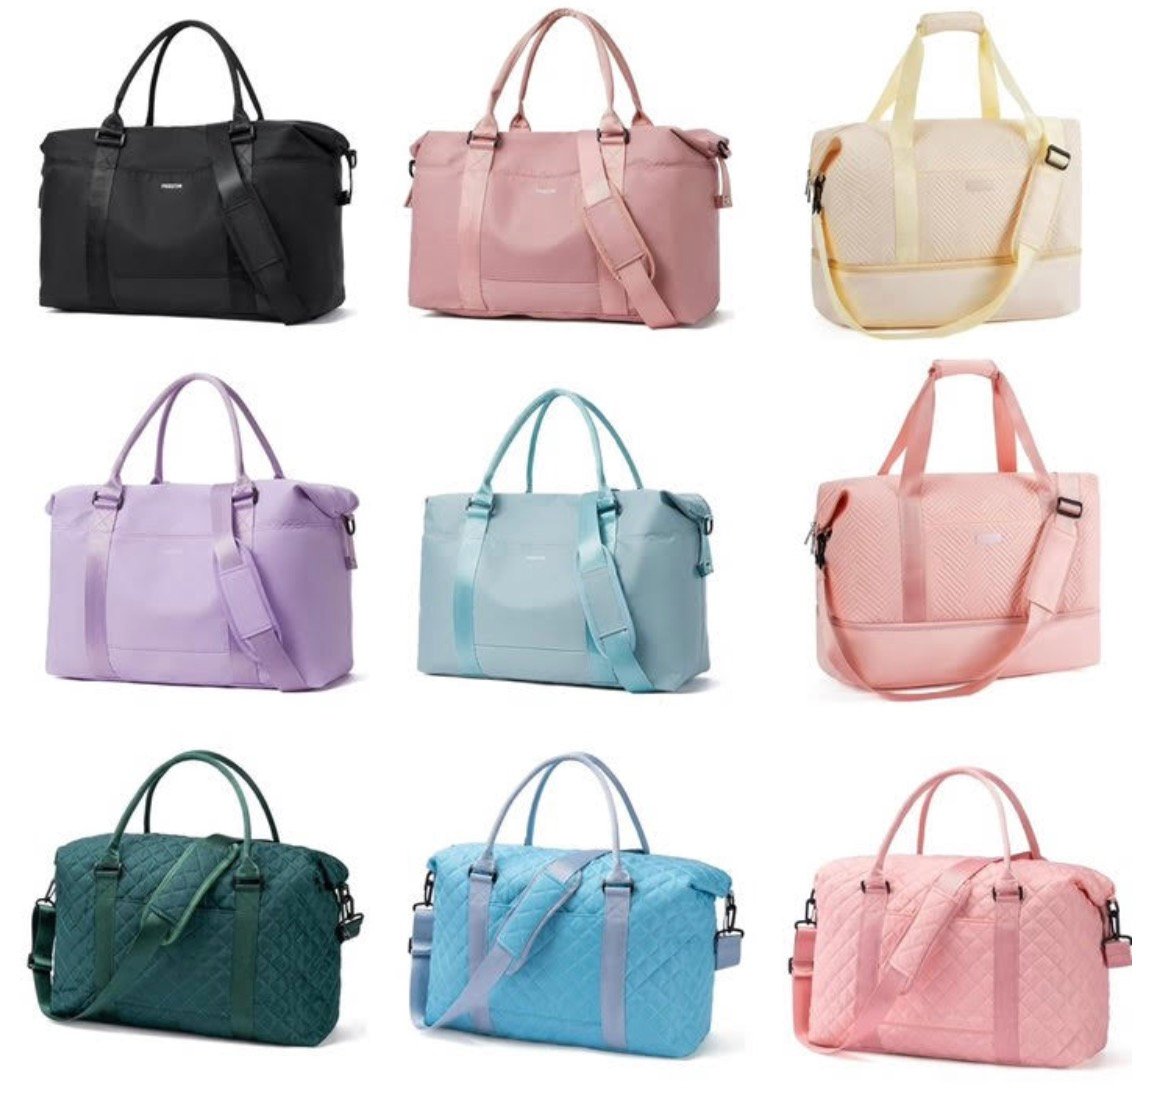 Ladies’s Weekender Bag solely $17.39!